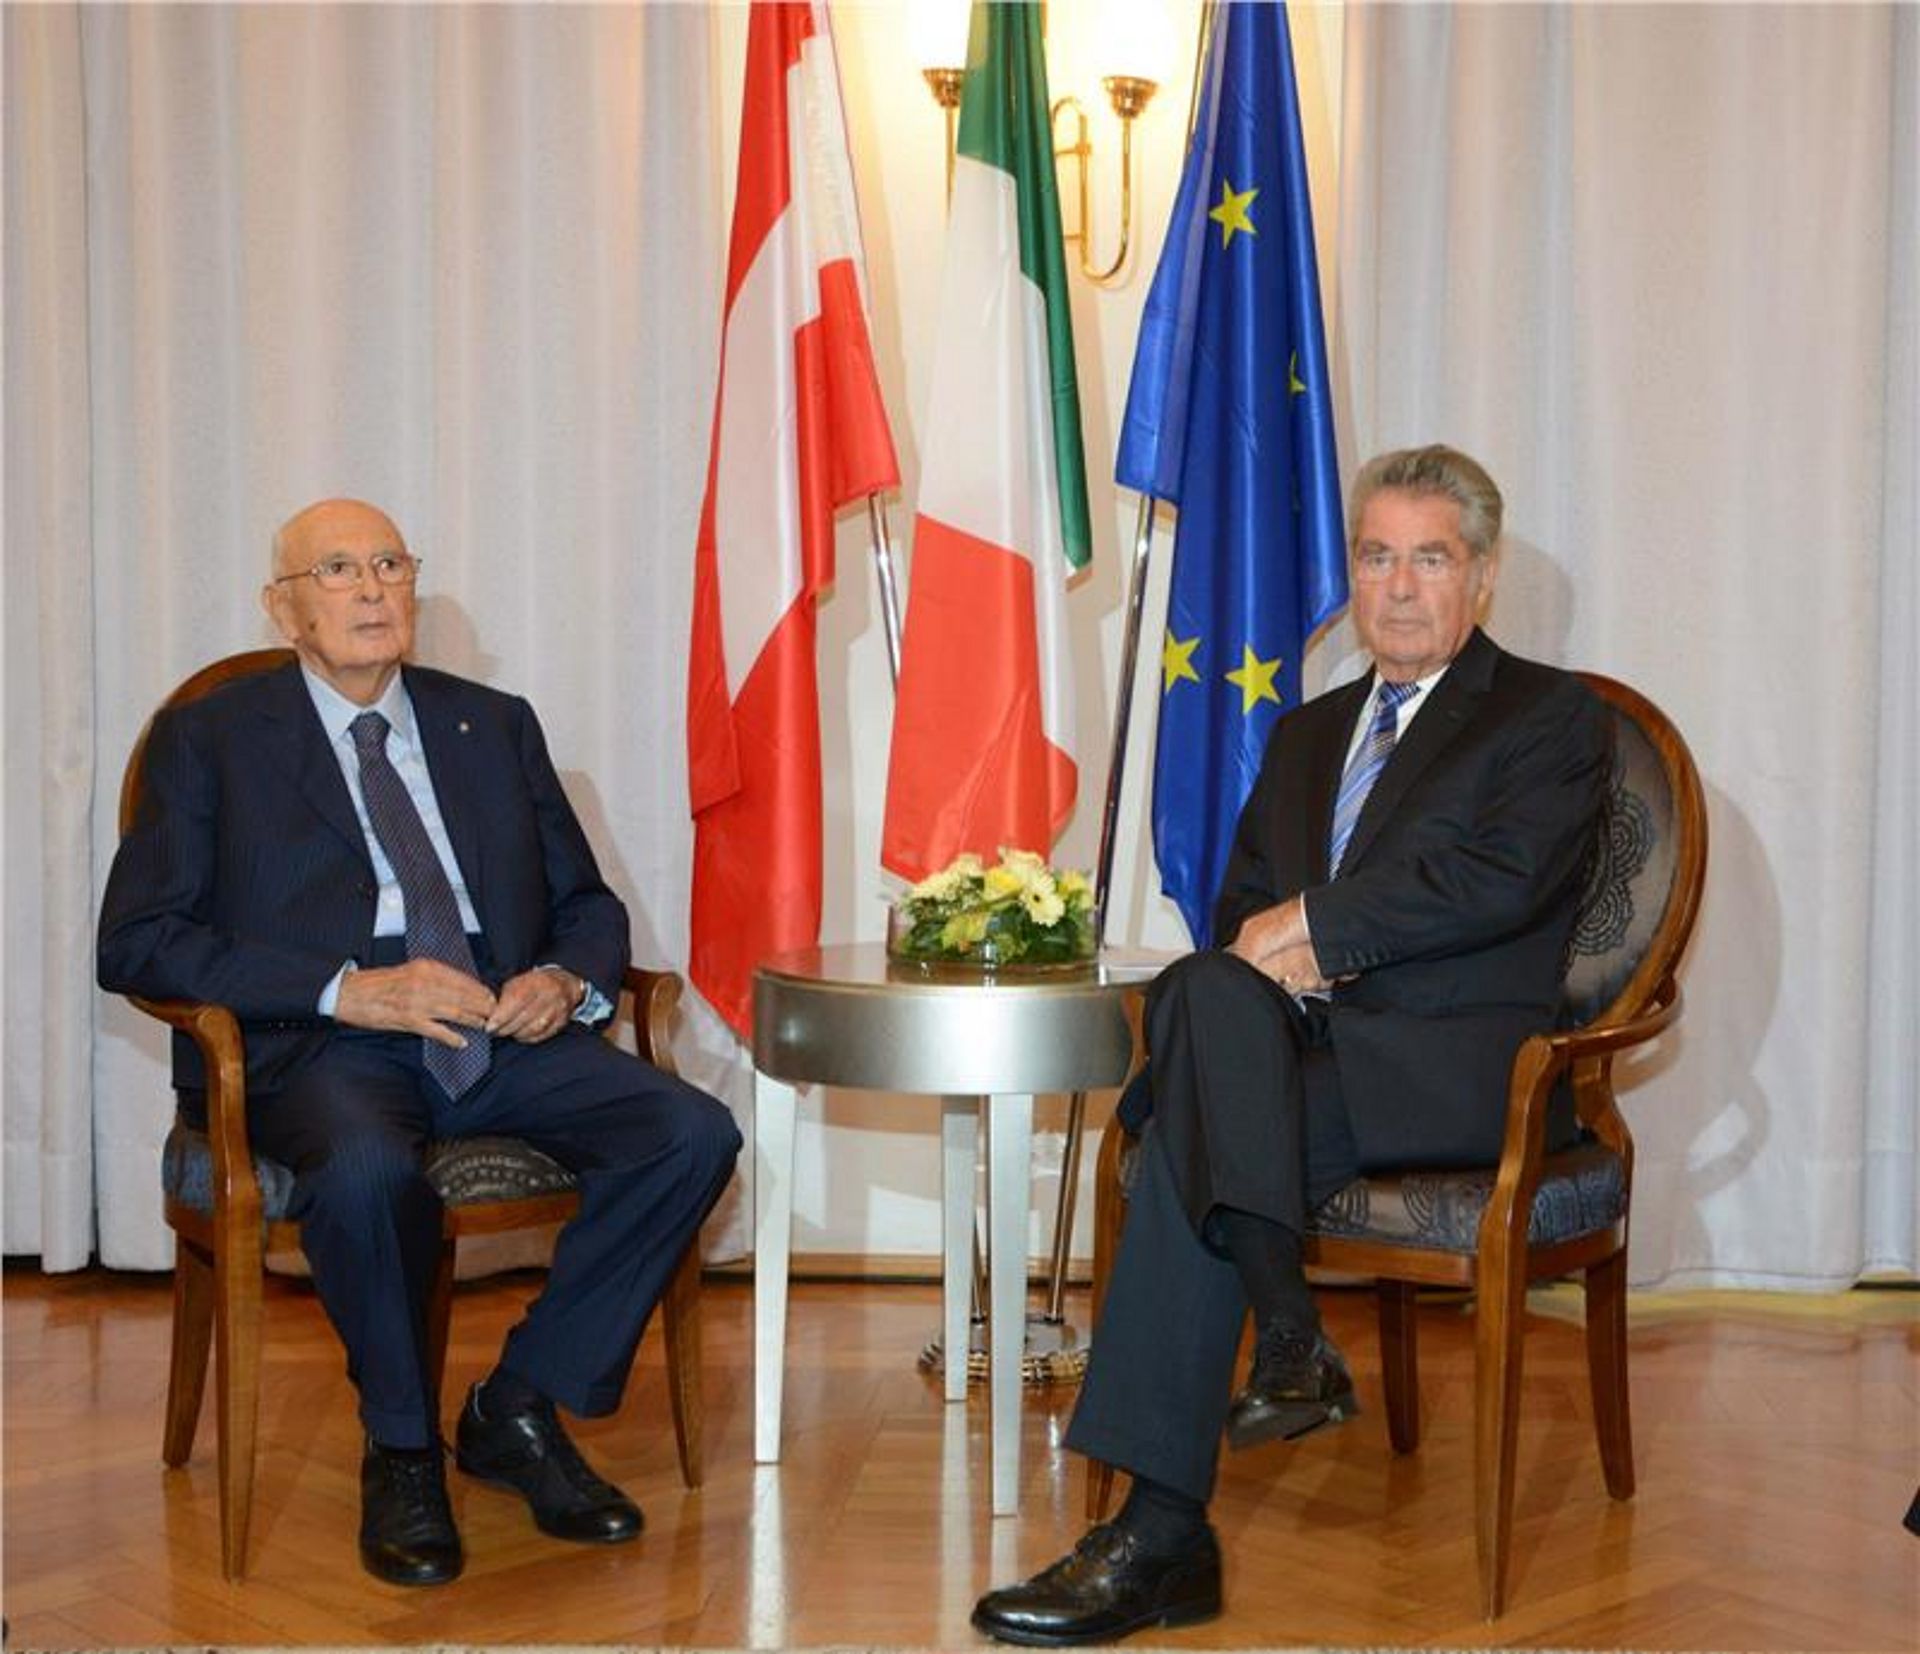 Die ehemaligen Staatsoberhäupter Giorgio Napolitano und Heinz Fischer am 5. September 2016 bei der Festtagung "70 Jahre Pariser Vertrag"